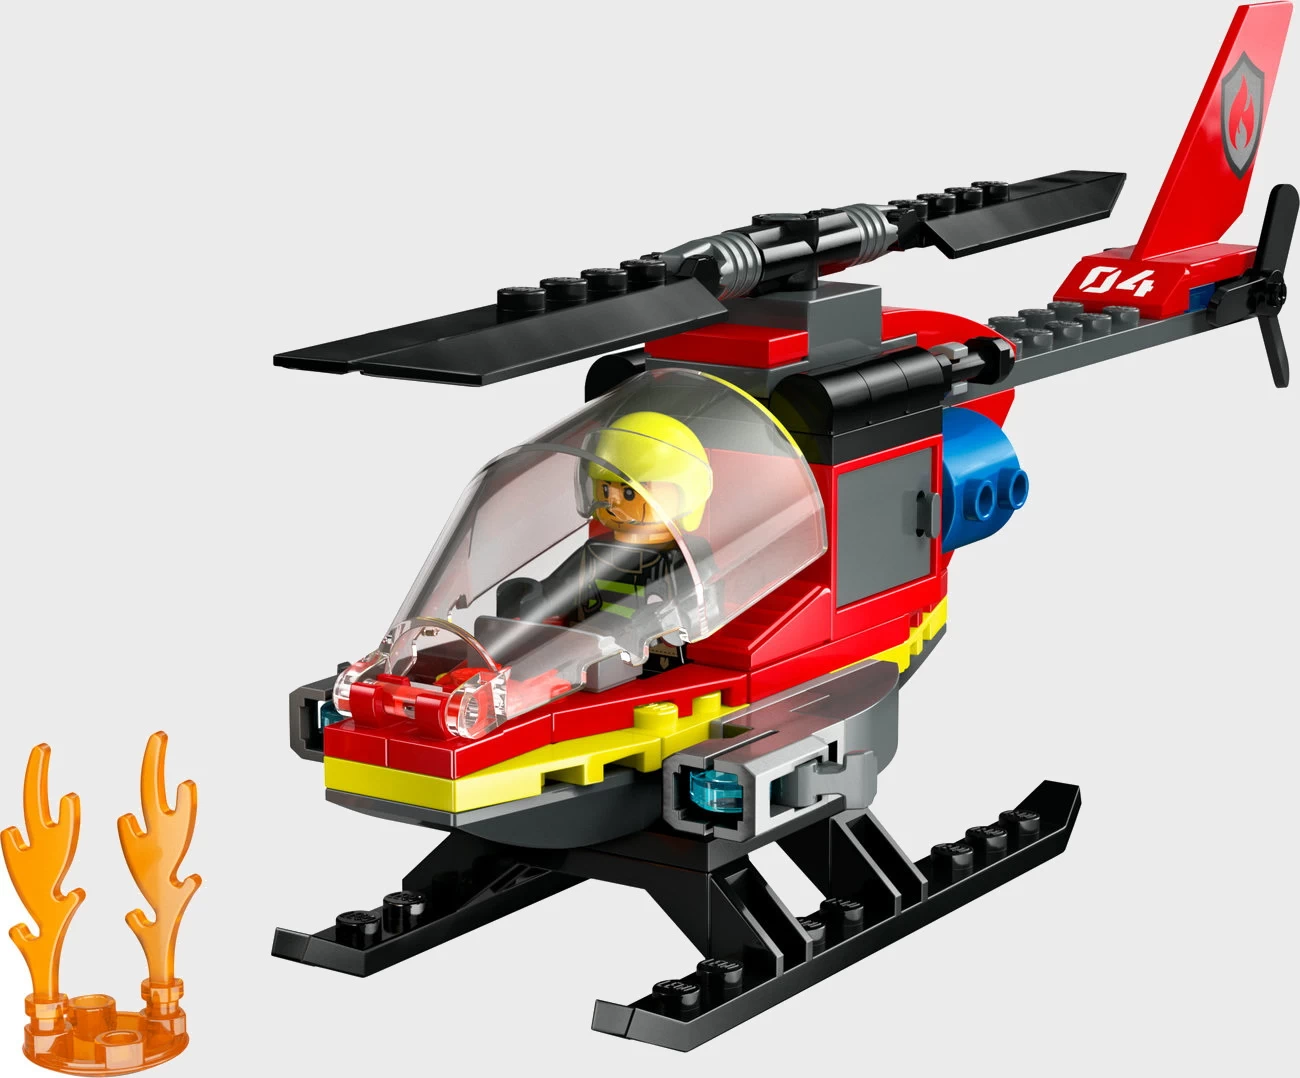 LEGO City 60411 - Feuerwehrhubschrauber